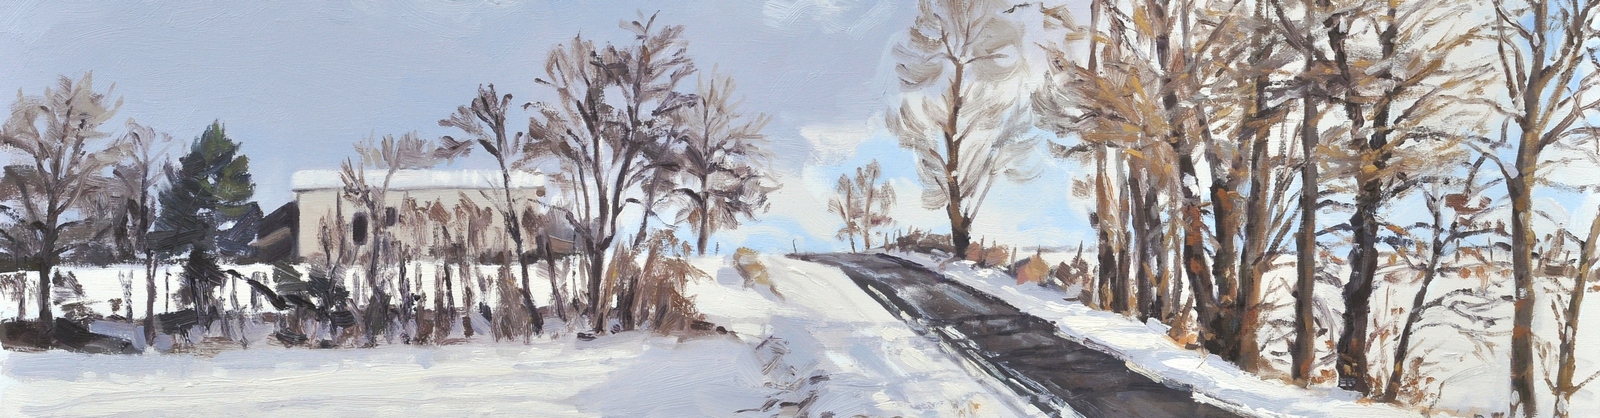 Vingt-trois janvier, neige à Saint Vincent, huile sur toile, 65x100cm, 2019